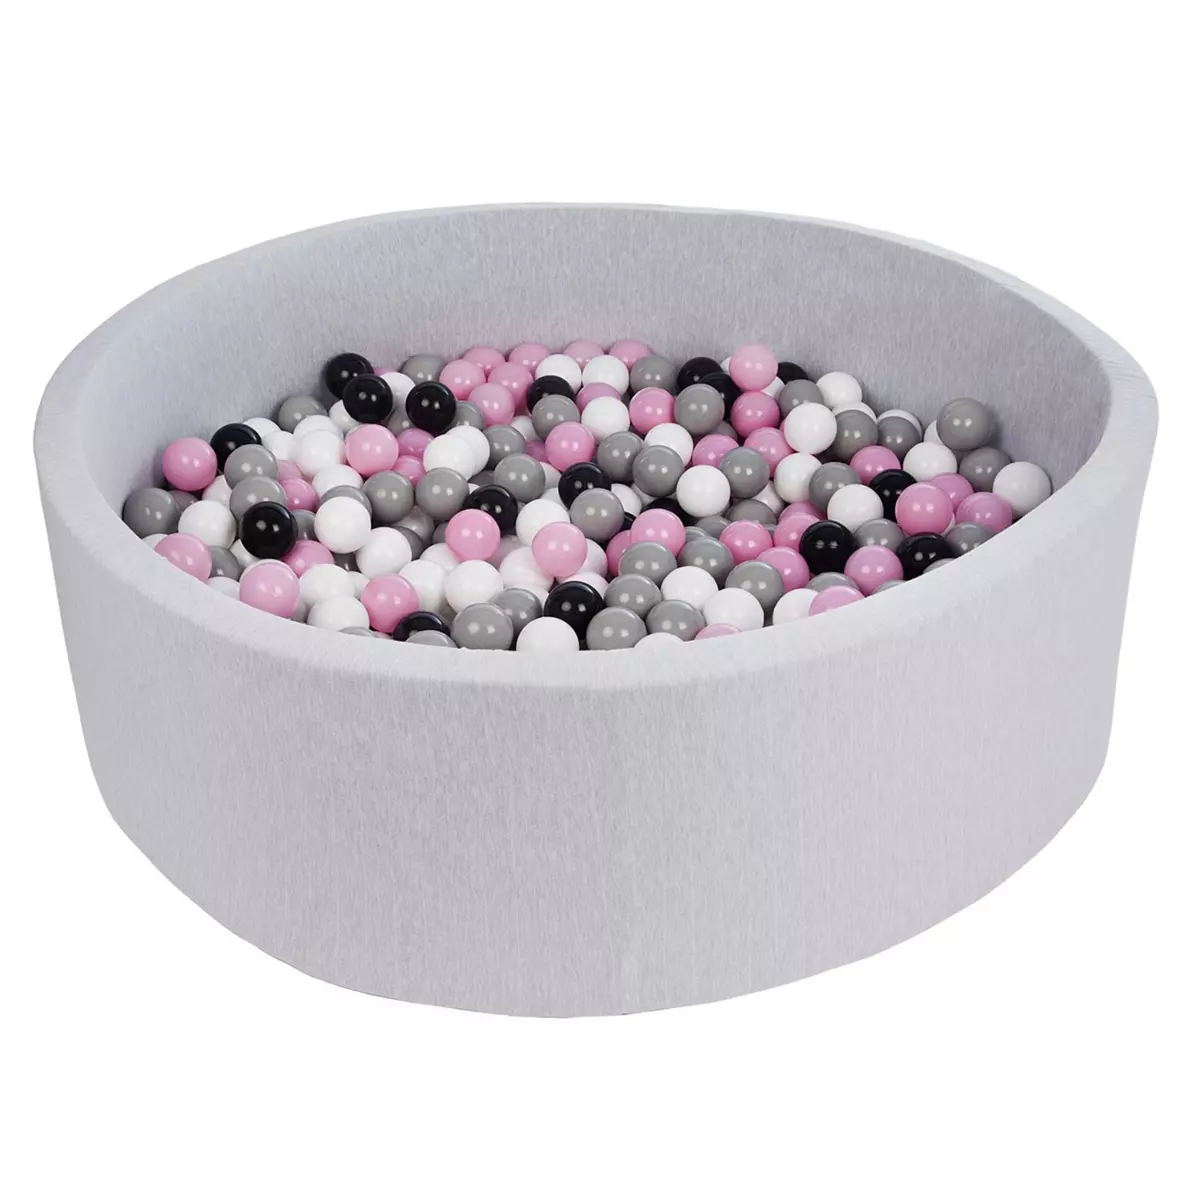  Piscine à balles pour enfant, diamètre env.125 cm, Aire de jeu + 600 balles noir,blanc,rose,gris